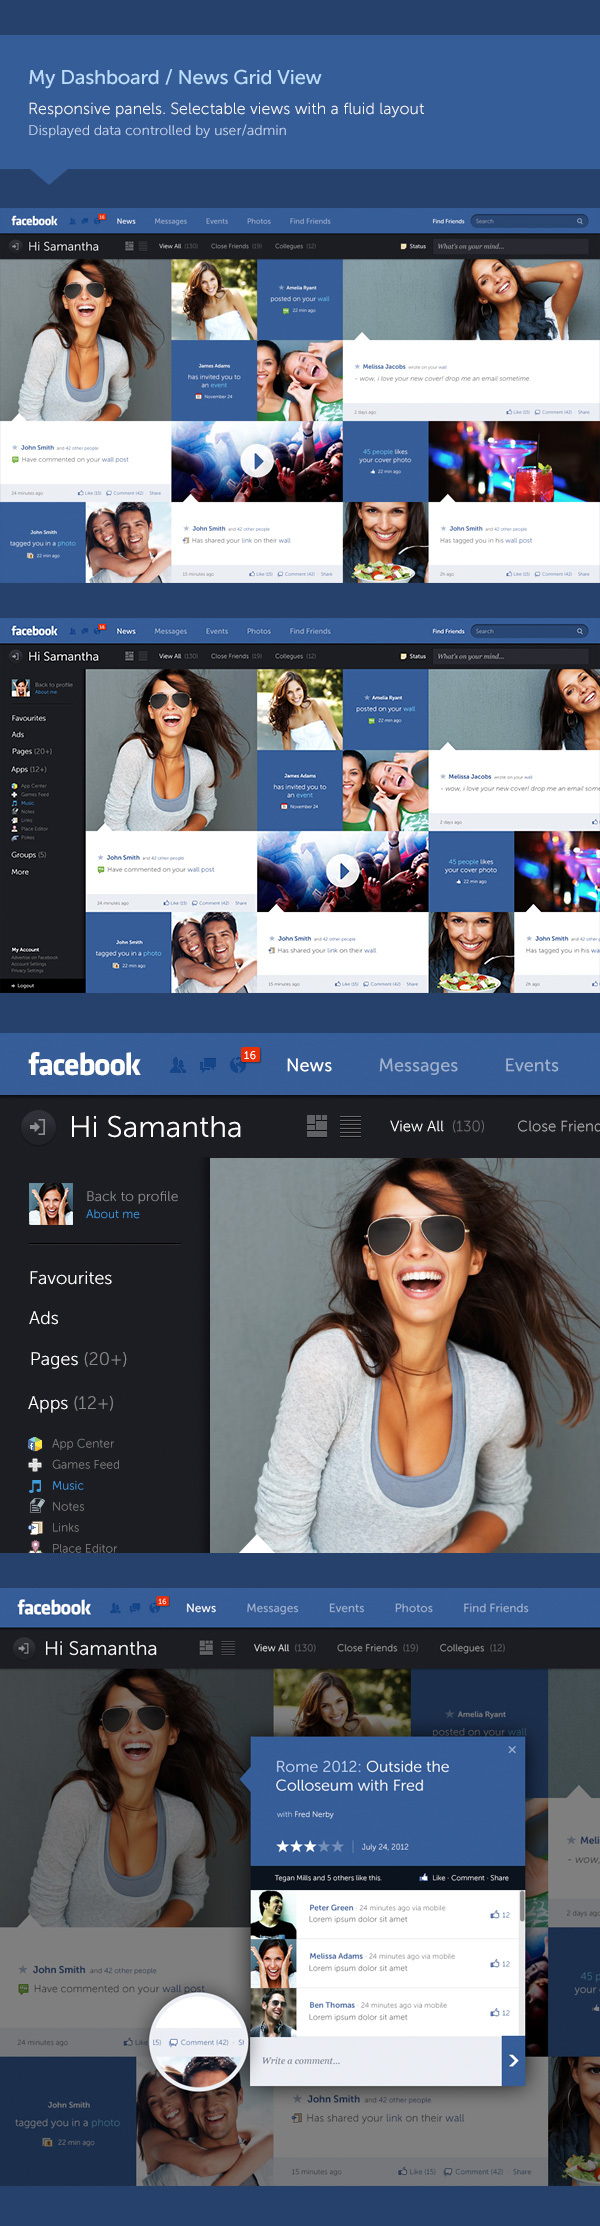 Designer Australiano cria uma nova idéia para o layout do Facebook, mais limpo e intuitivo. (2)